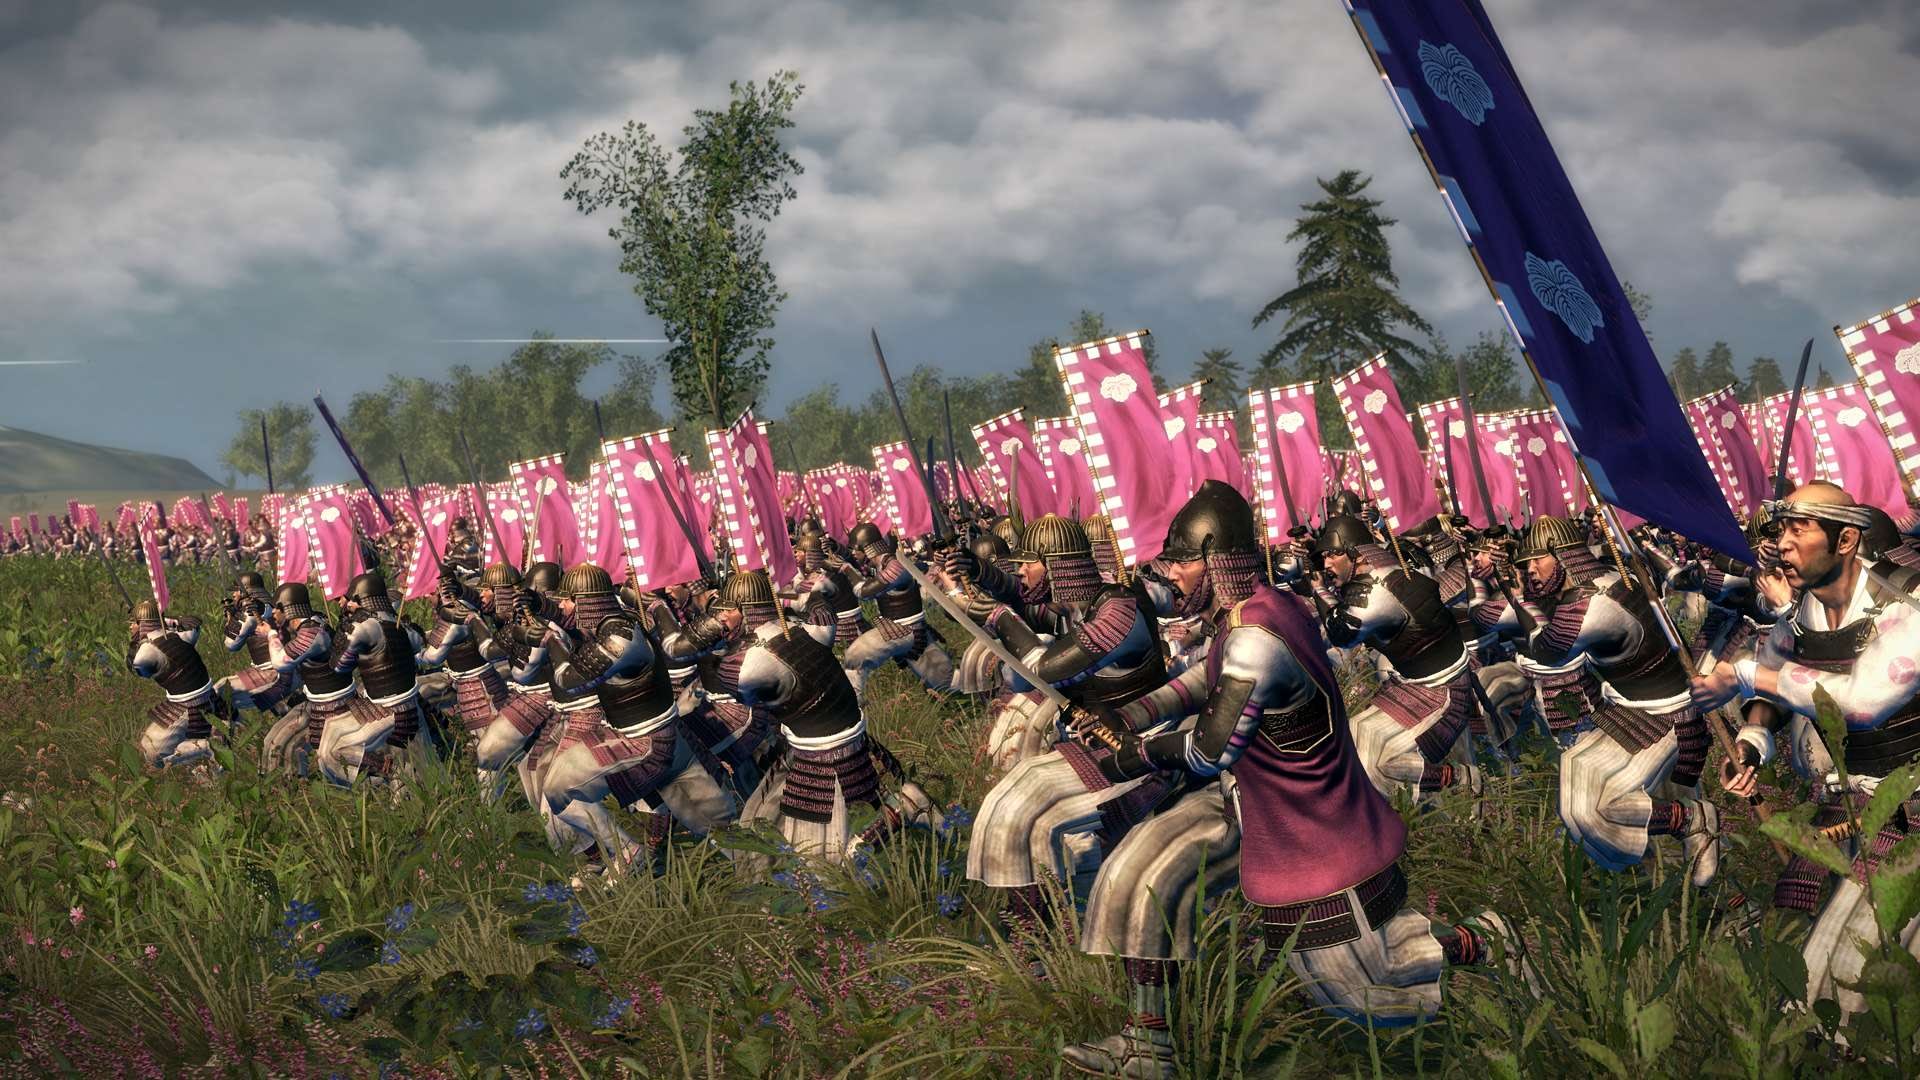 The First Total War: Shogun Total War Retrospective